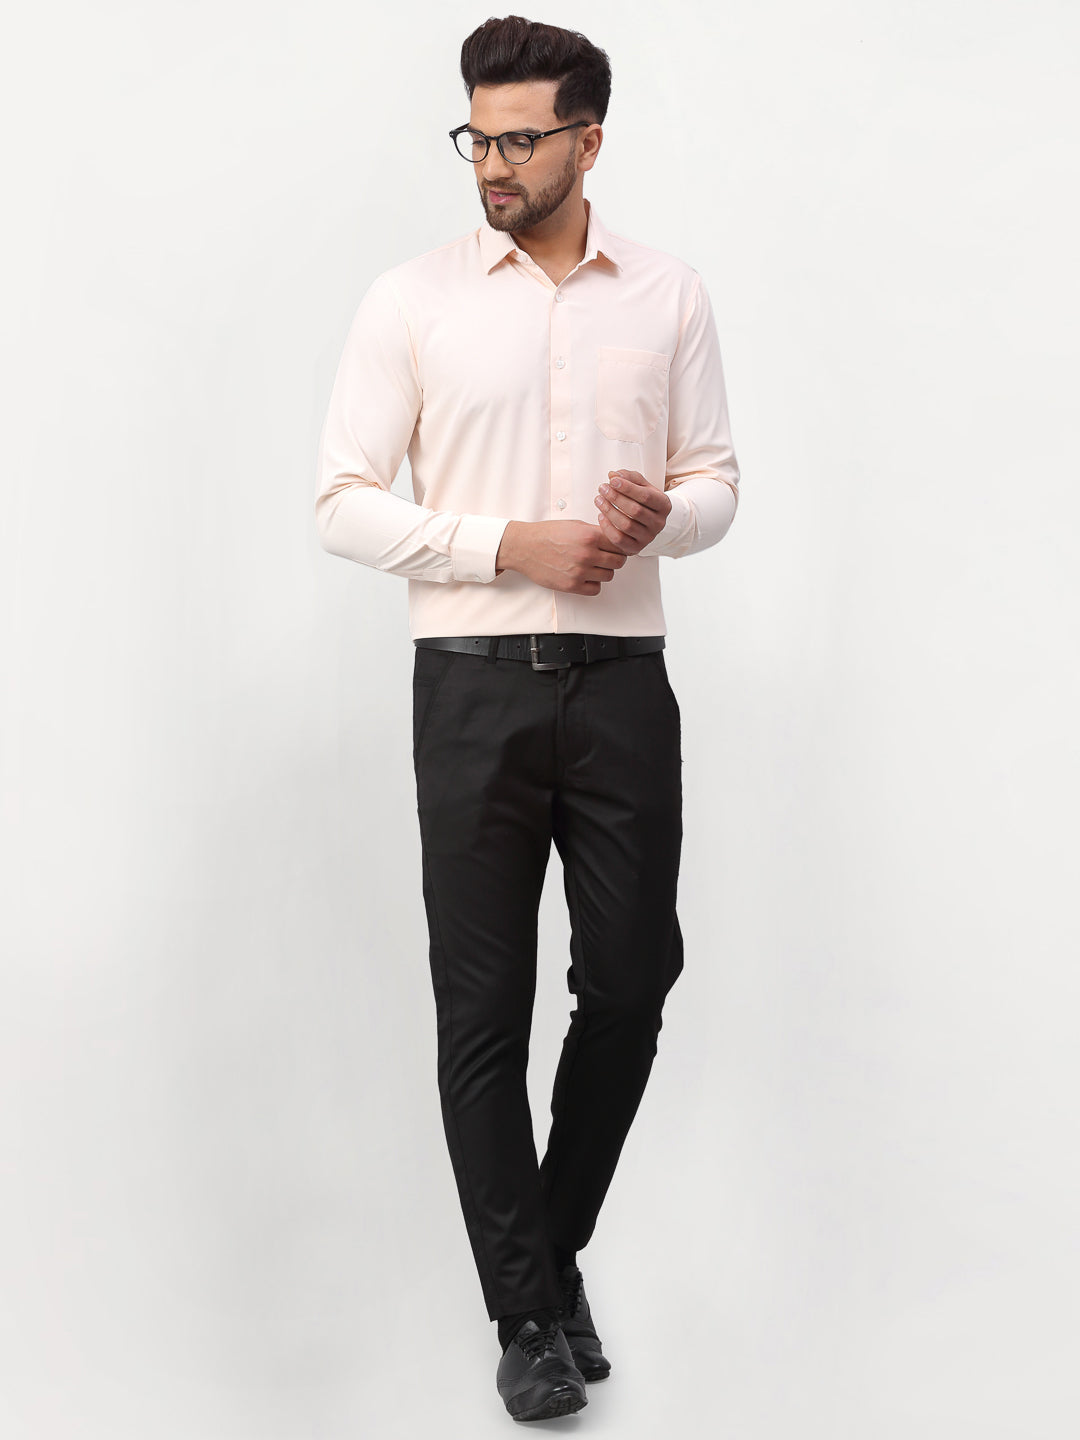 Men's Peach Solid Formal Shirts ( SF 777Peach ) - Jainish